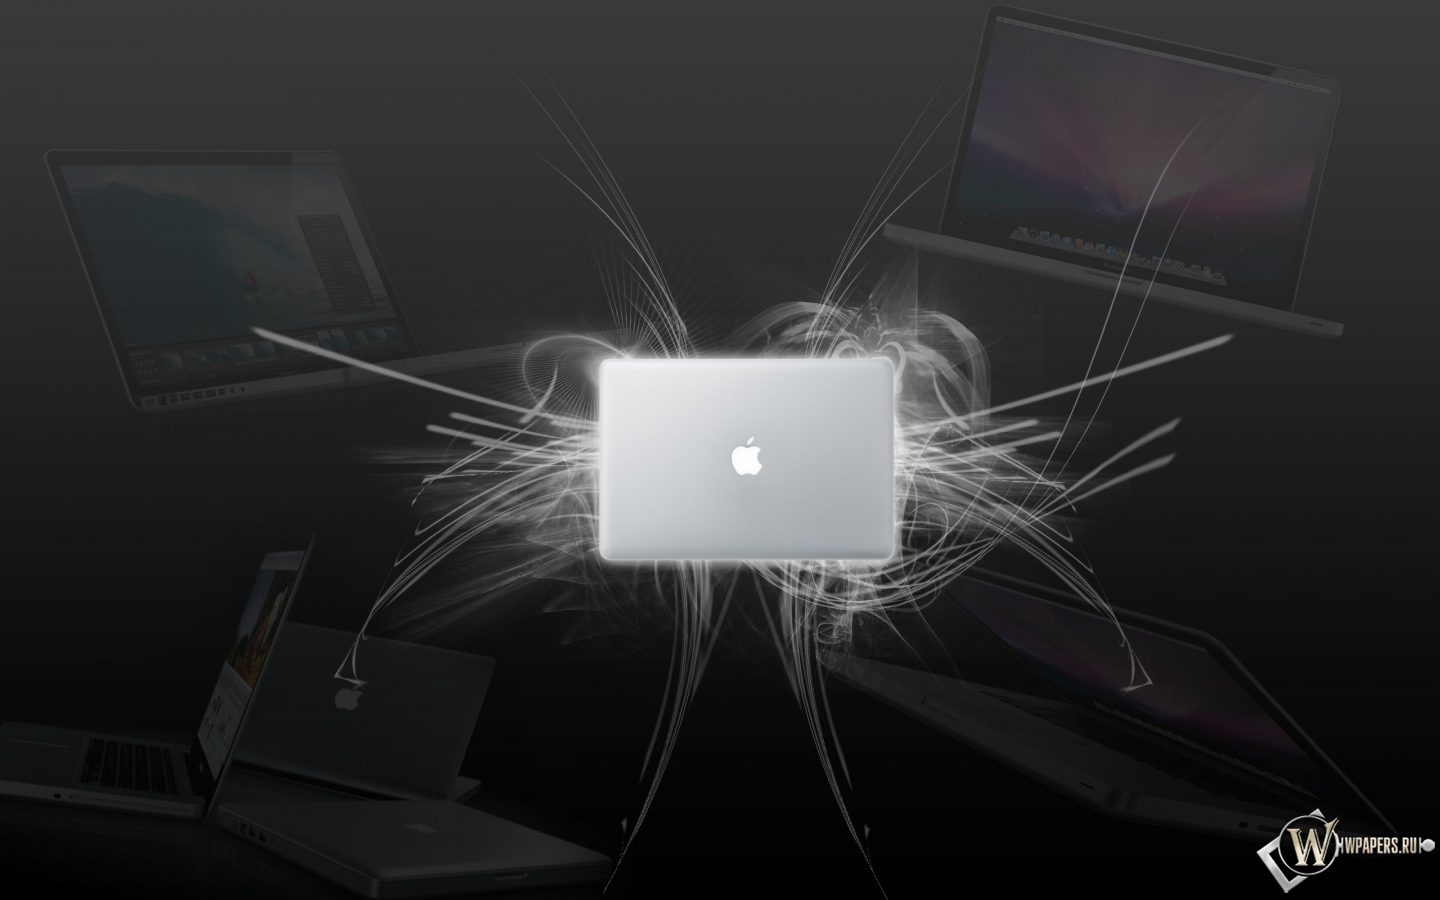 MacBook wallpaper 1440x900